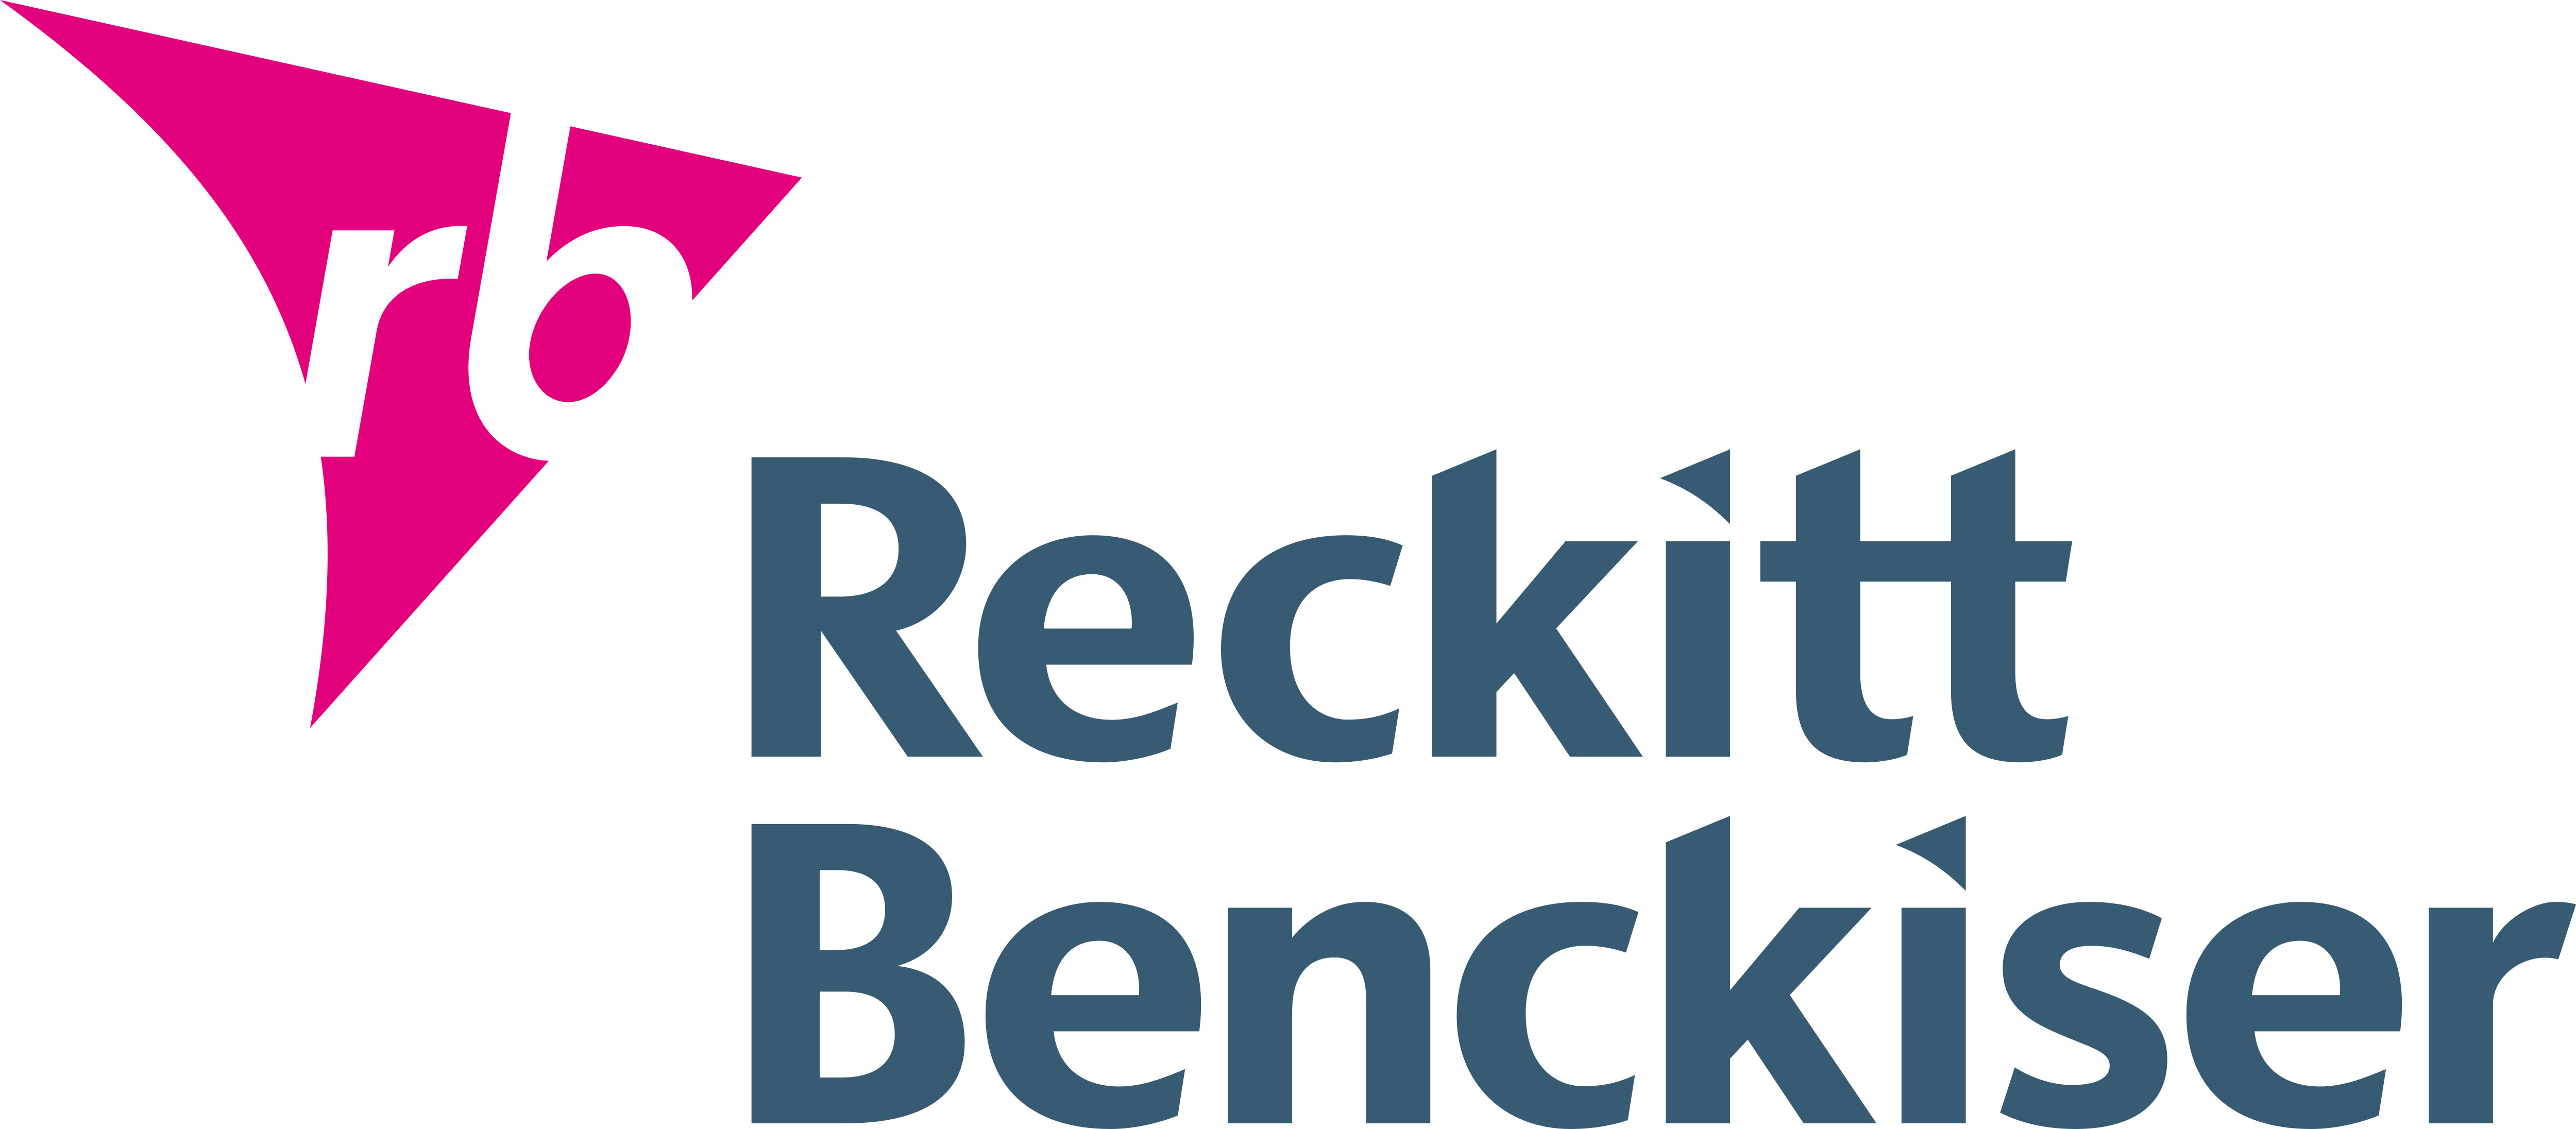 Reckitt Benckiser Logo - KibrisPDR